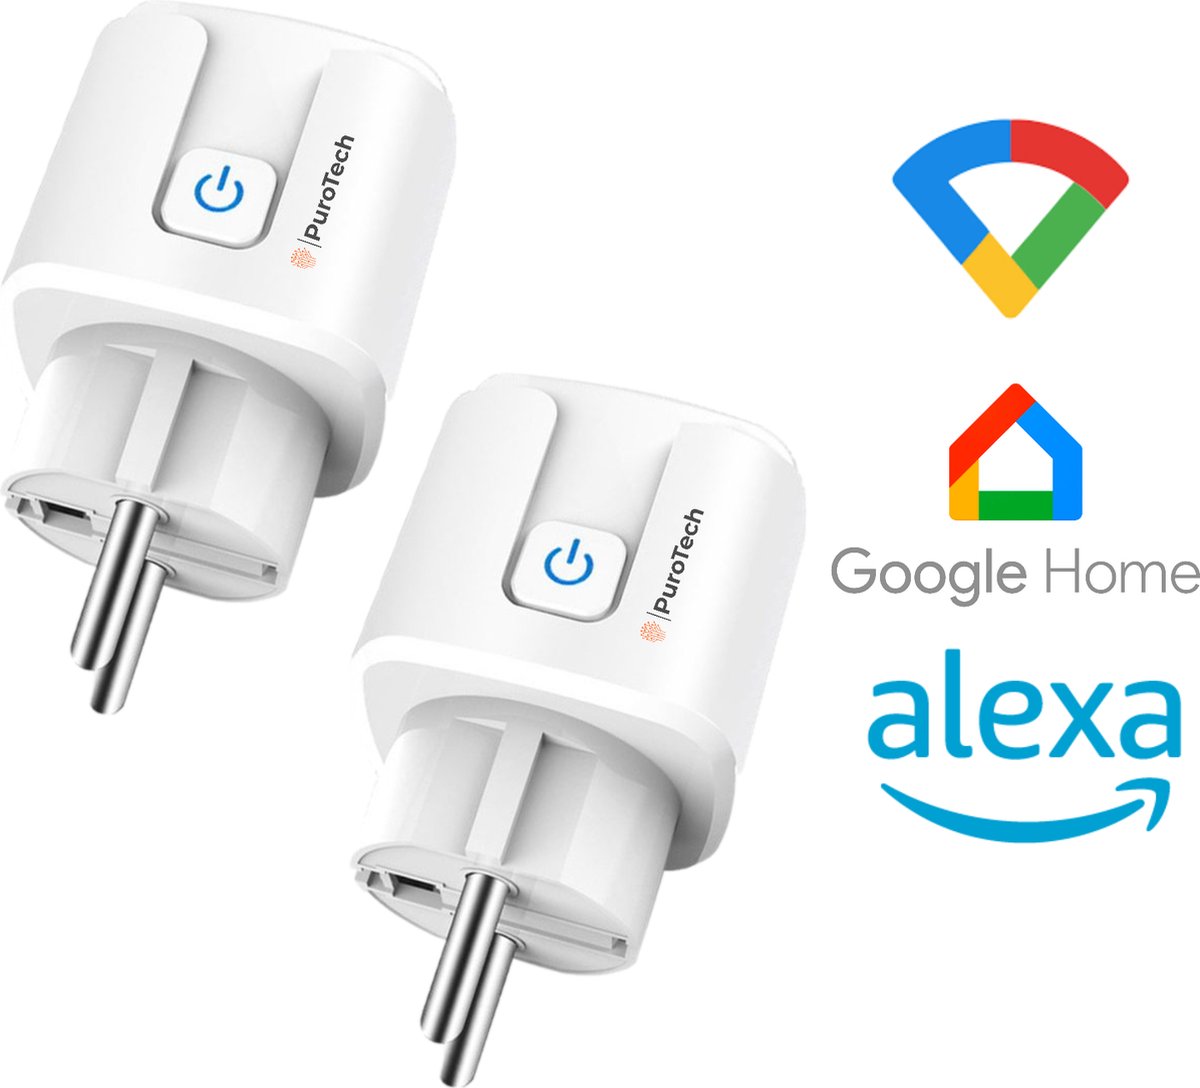 PuroTech Slimme Stekkers - DUO Pack - Smart Plug - Inclusief Energiemeter - Geschikt Voor Alexa & Google Home - Smartphone App - Verbruiksmeter - Energiekosten